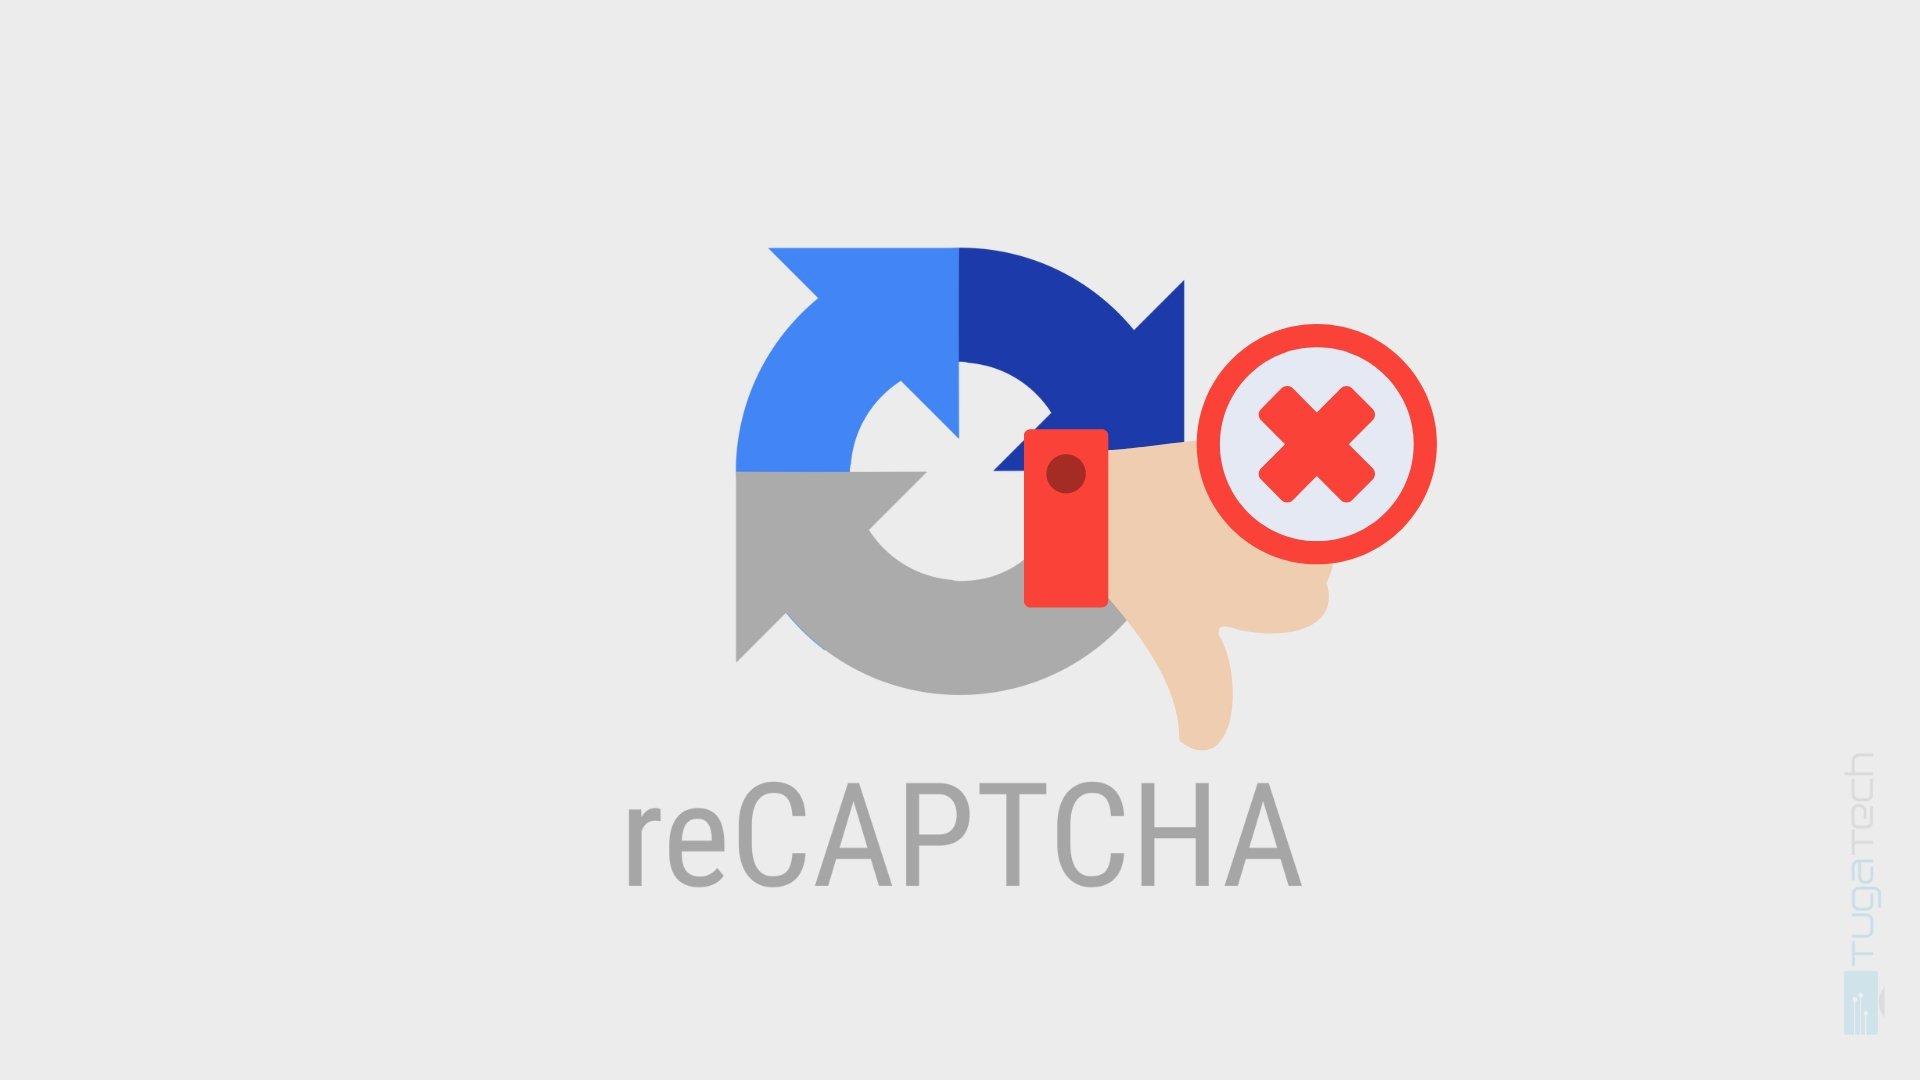 Google corrige problema no reCaptcha que afetava utilizadores do Firefox